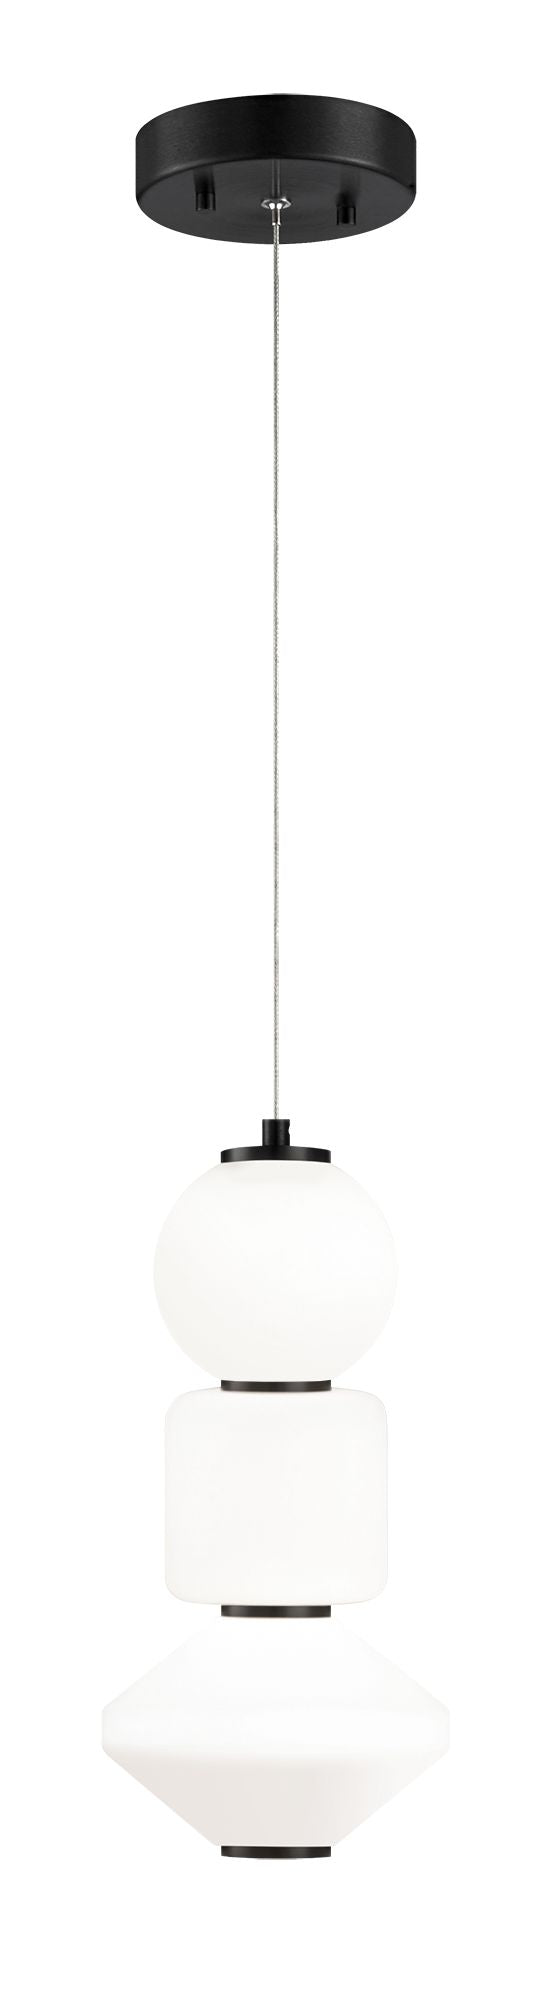 DANGO Mini pendant Black INTEGRATED LED - C82412OB | MATTEO